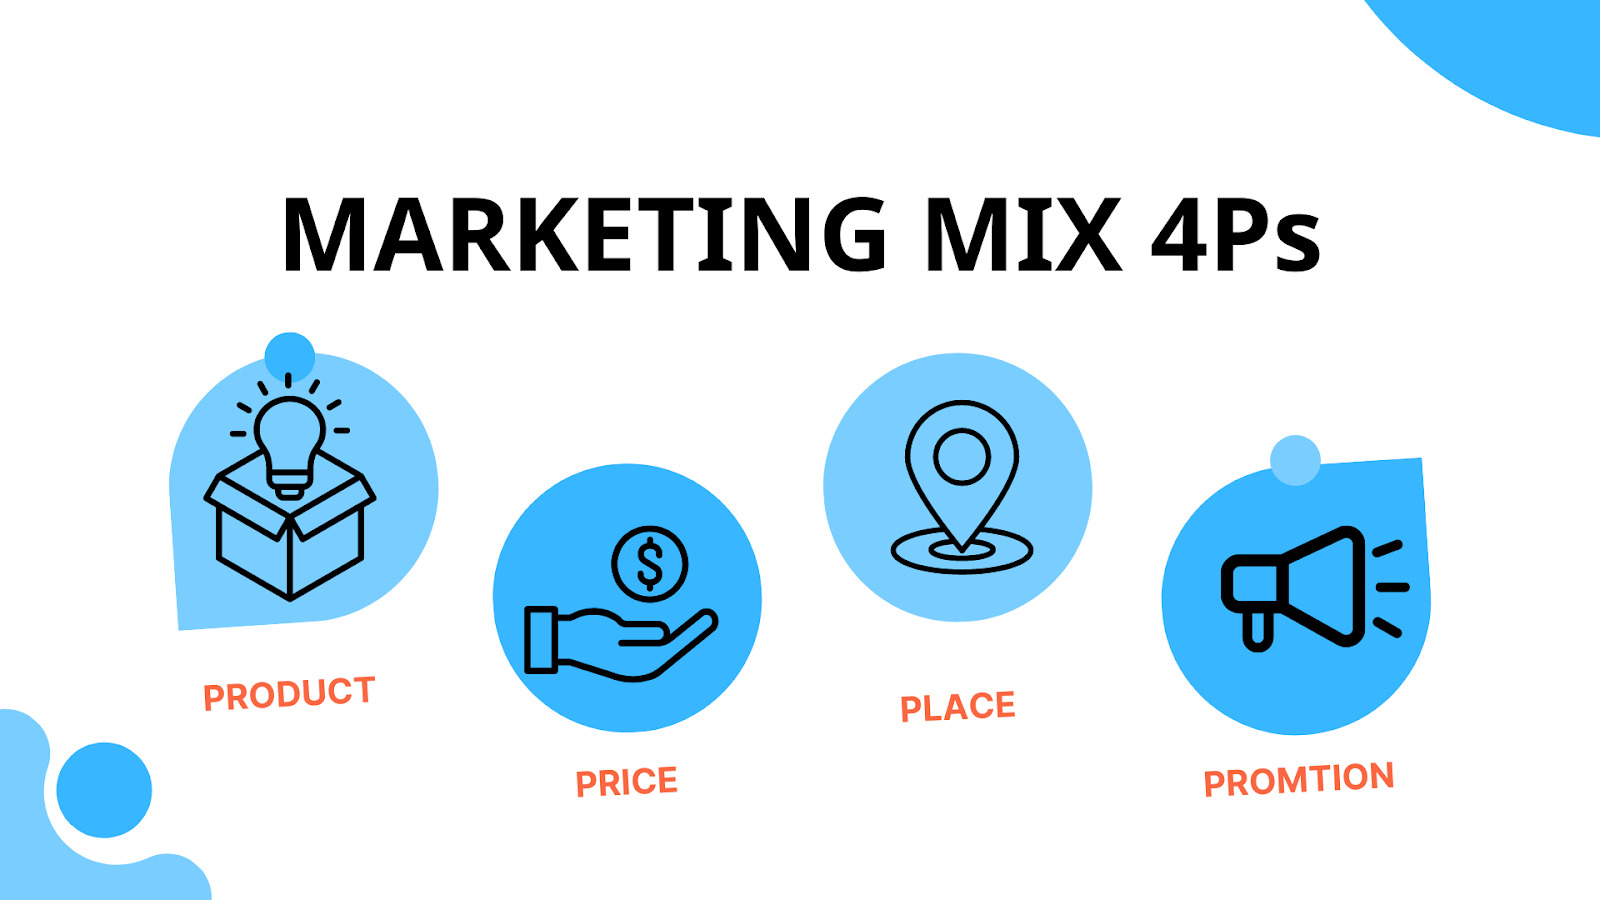 Chiến lược Marketing Mix 4Ps là nền tảng cho các hoạt động khác